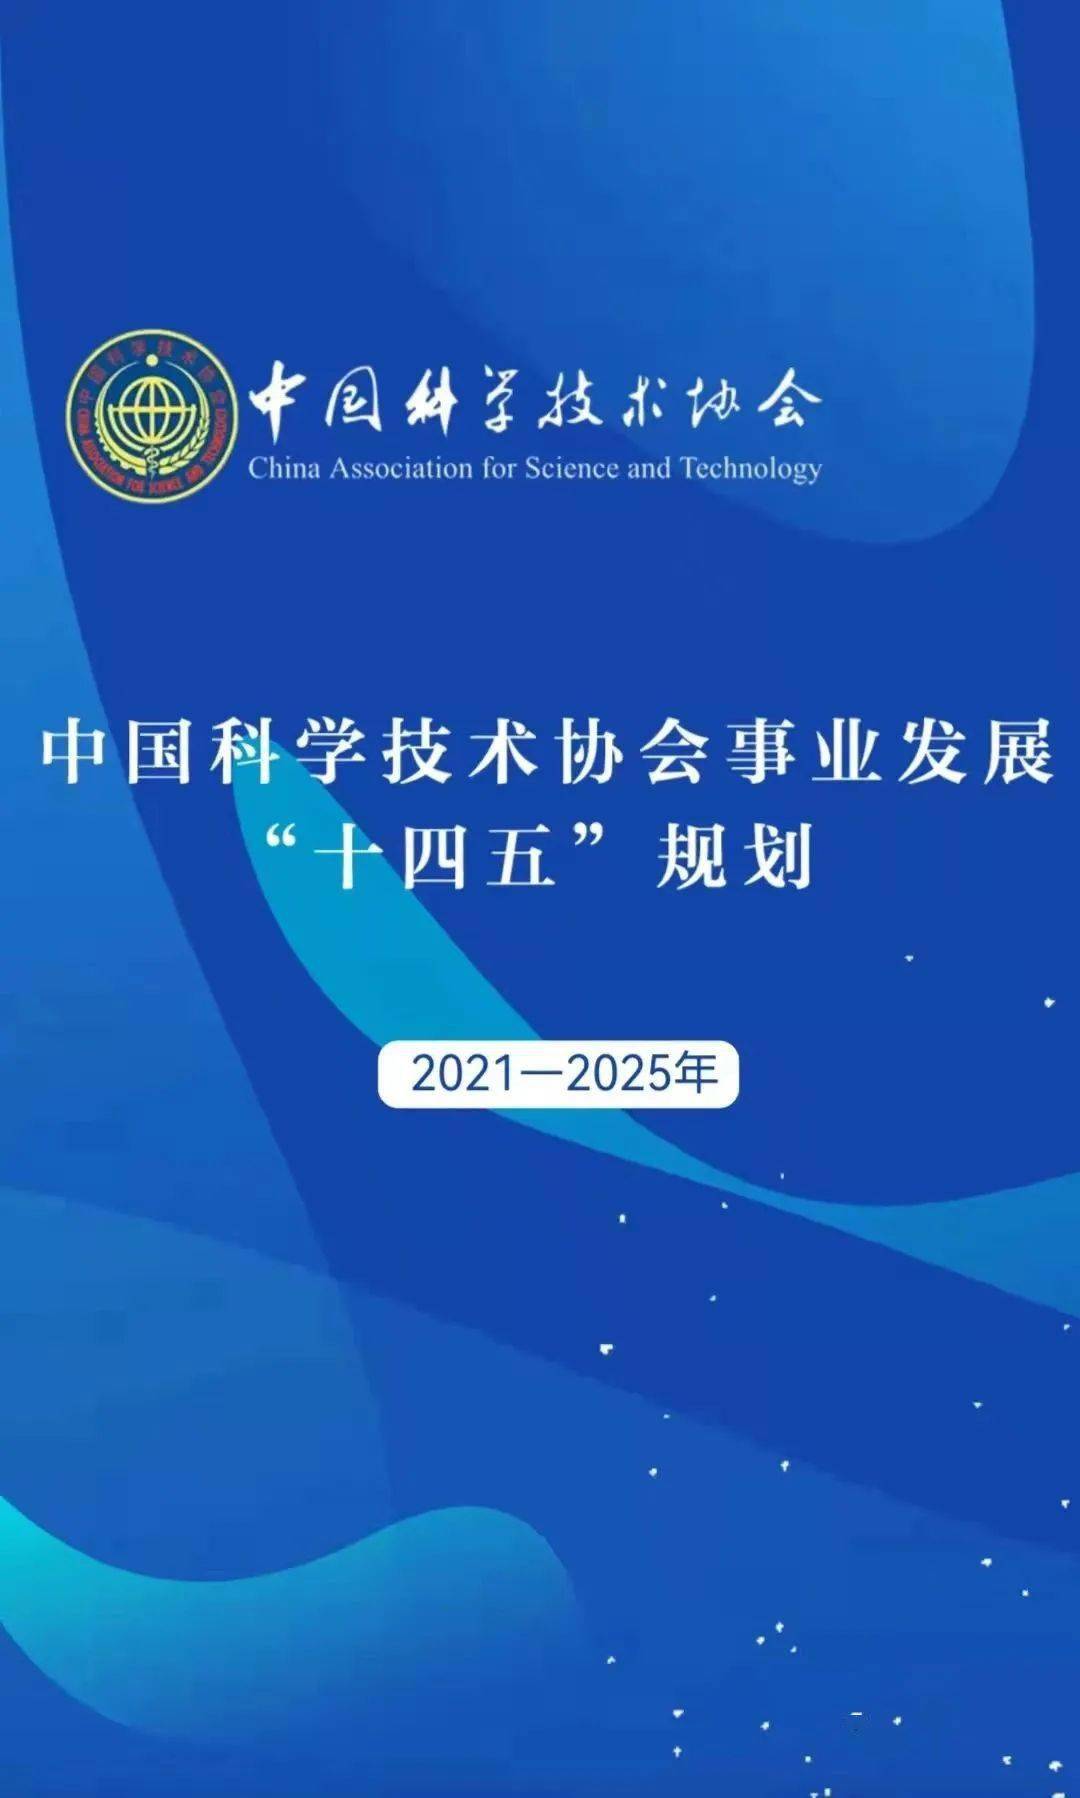 中国科学技术协会事业发展十四五规划20212025年